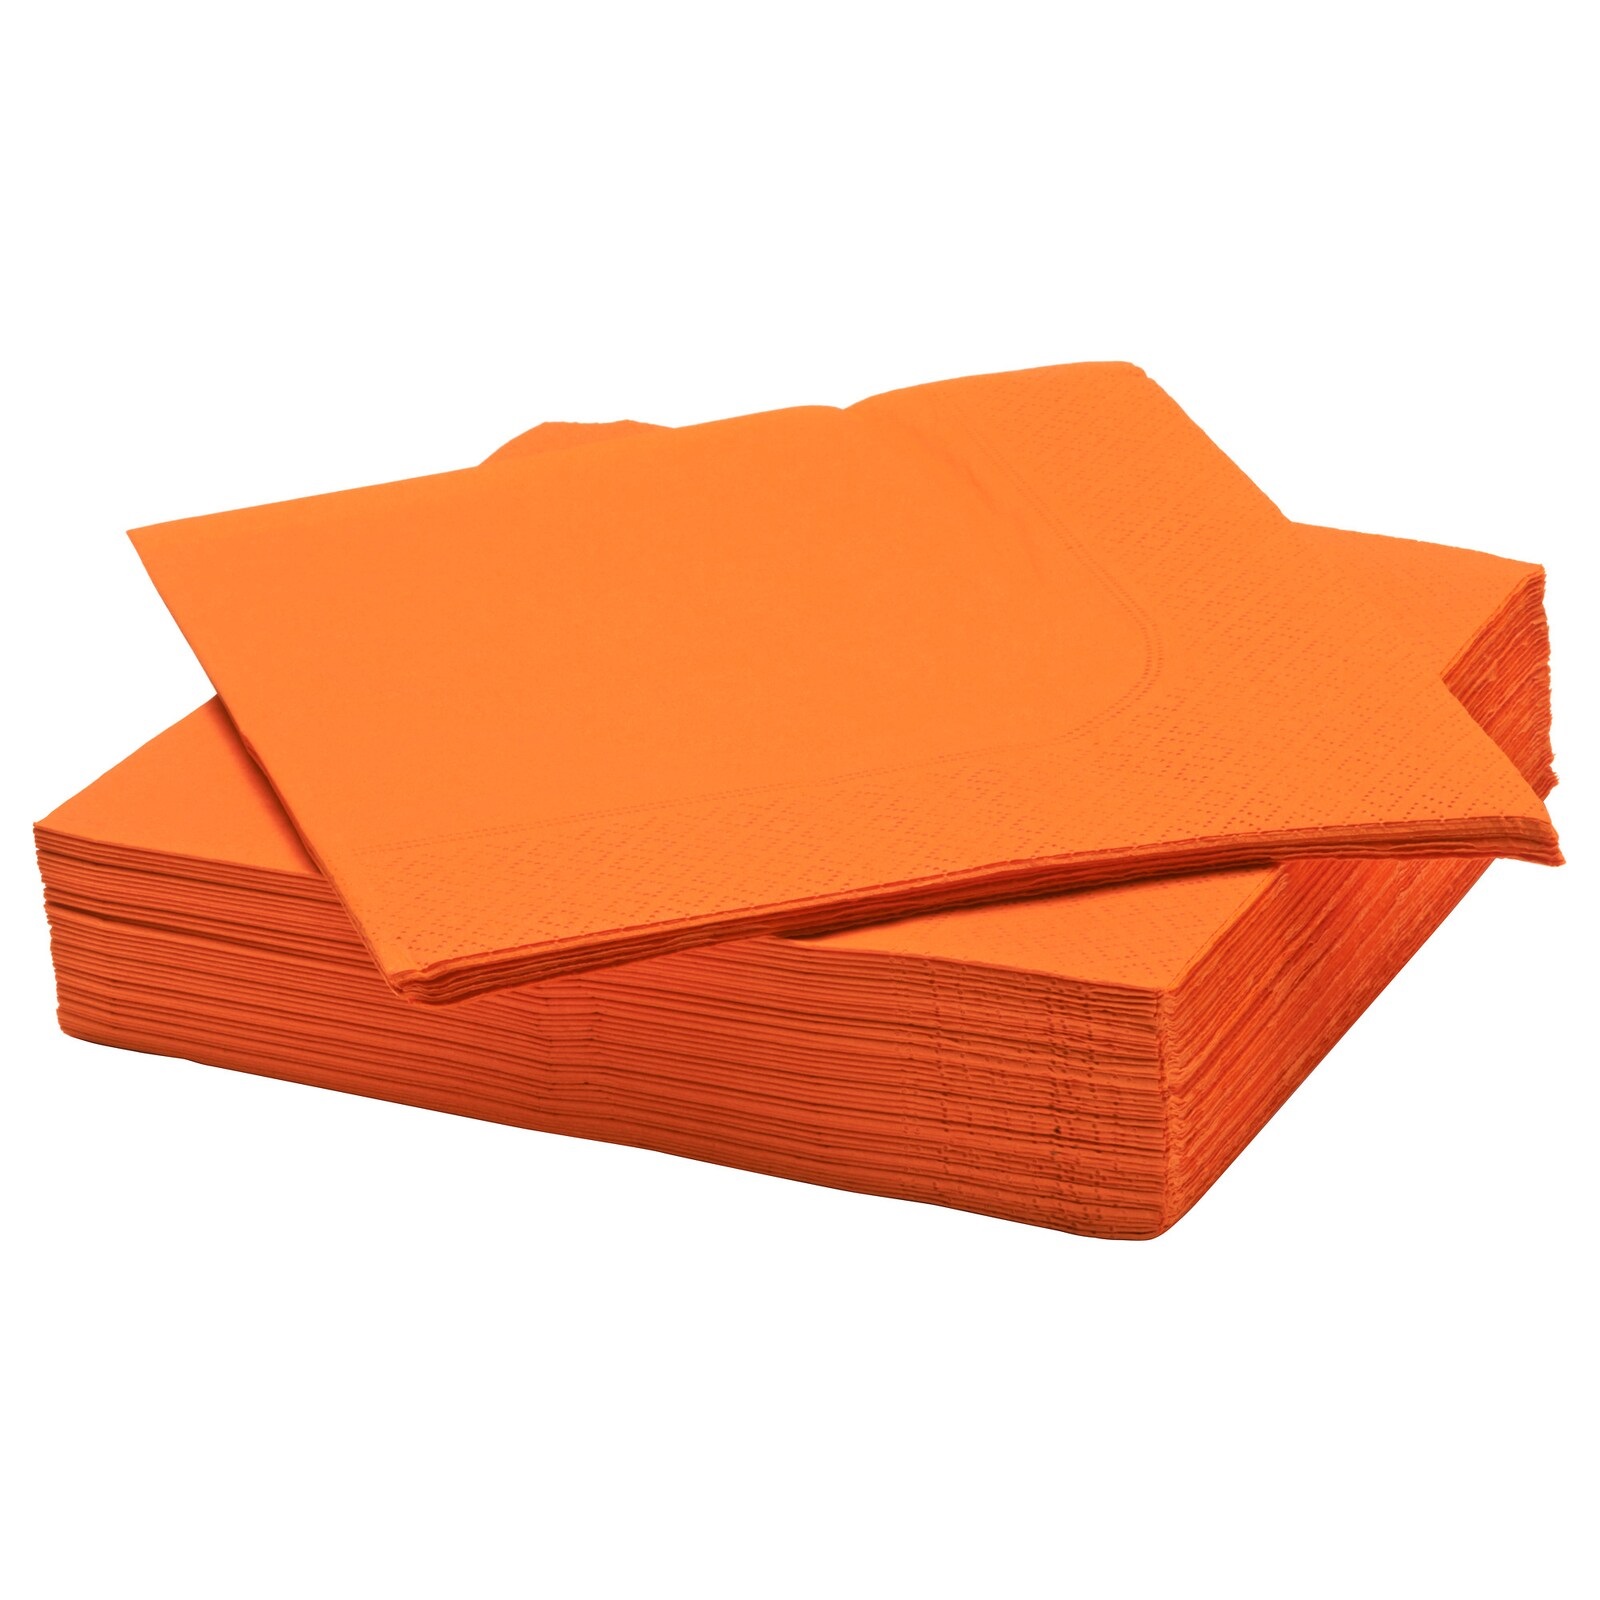 دستمال کاغذی ایکیا مدل FANTASTISK بسته 50عددی